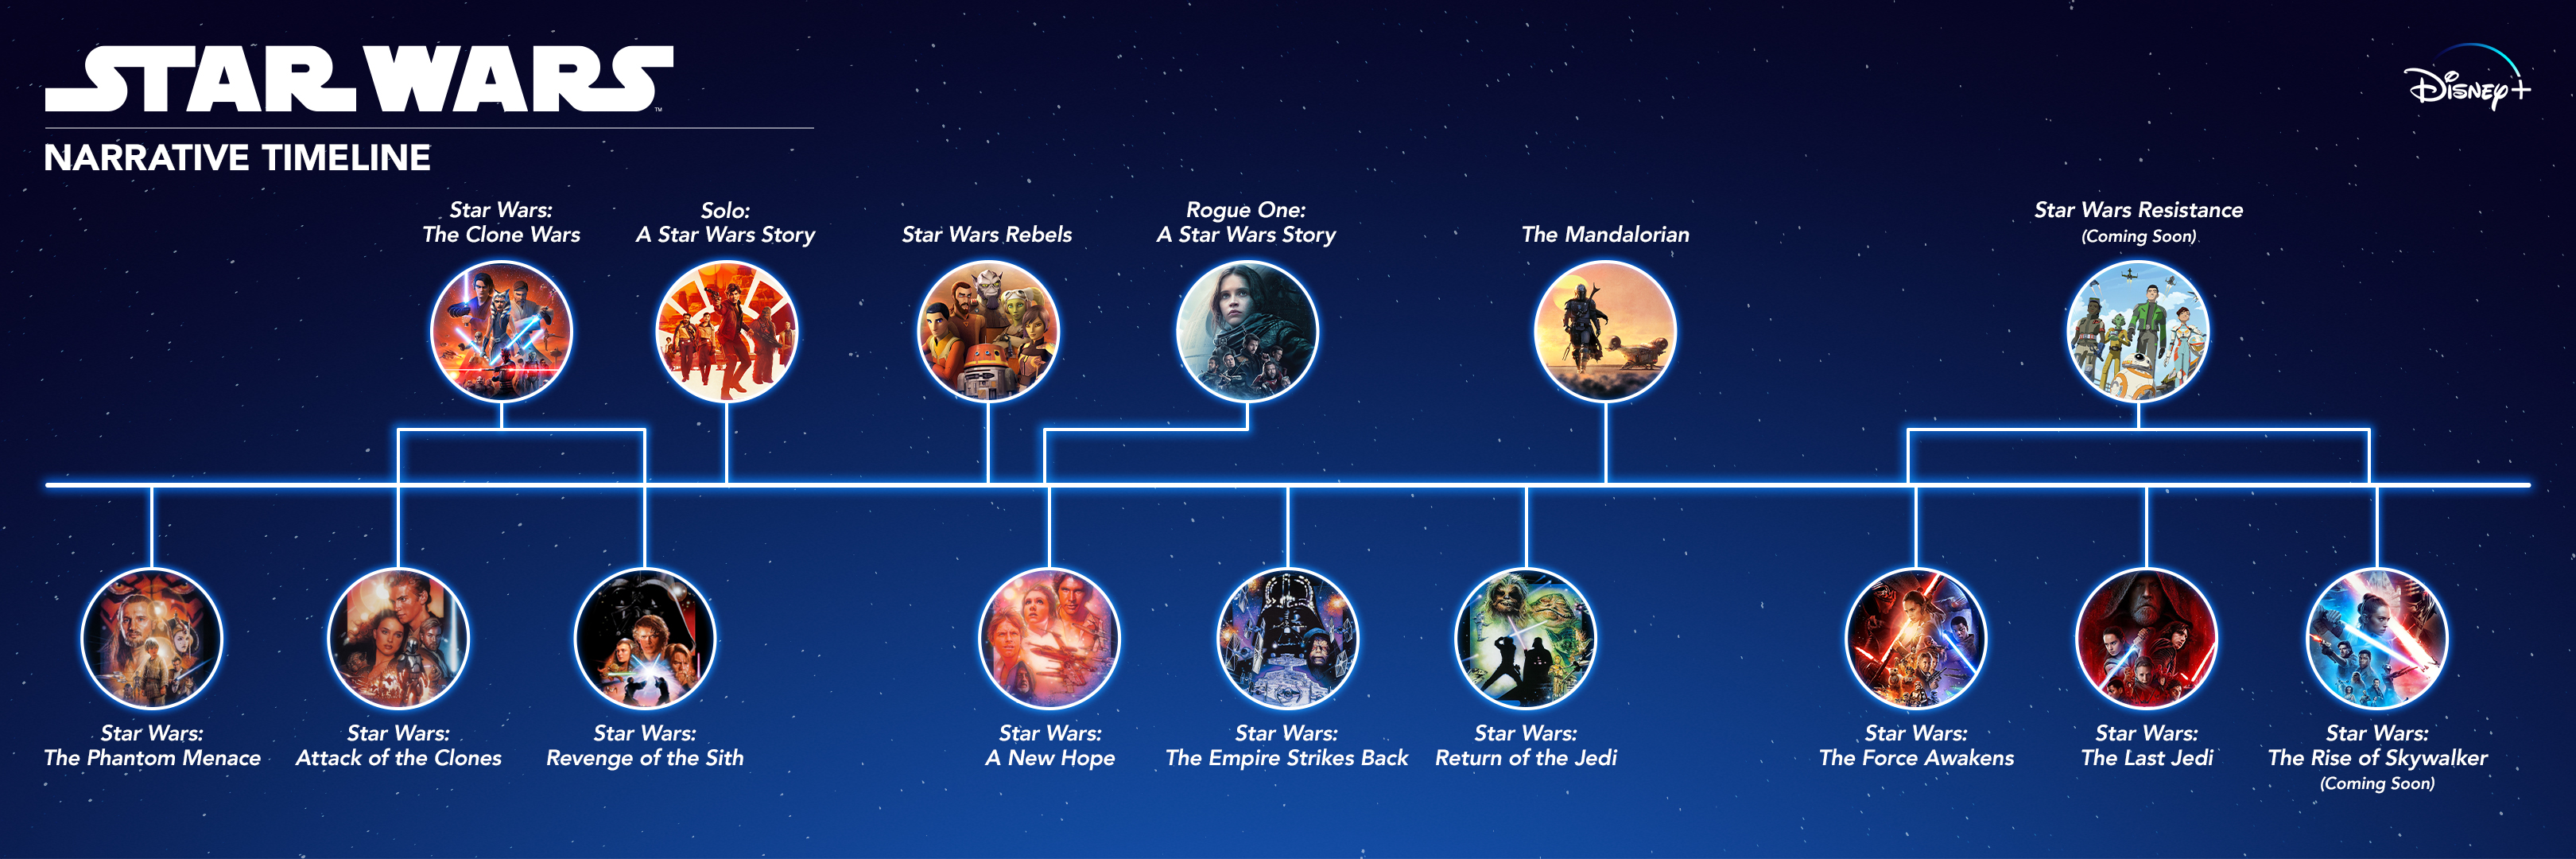 ¿Cuánto tiempo se tarda en ver películas de Star Wars gratis?